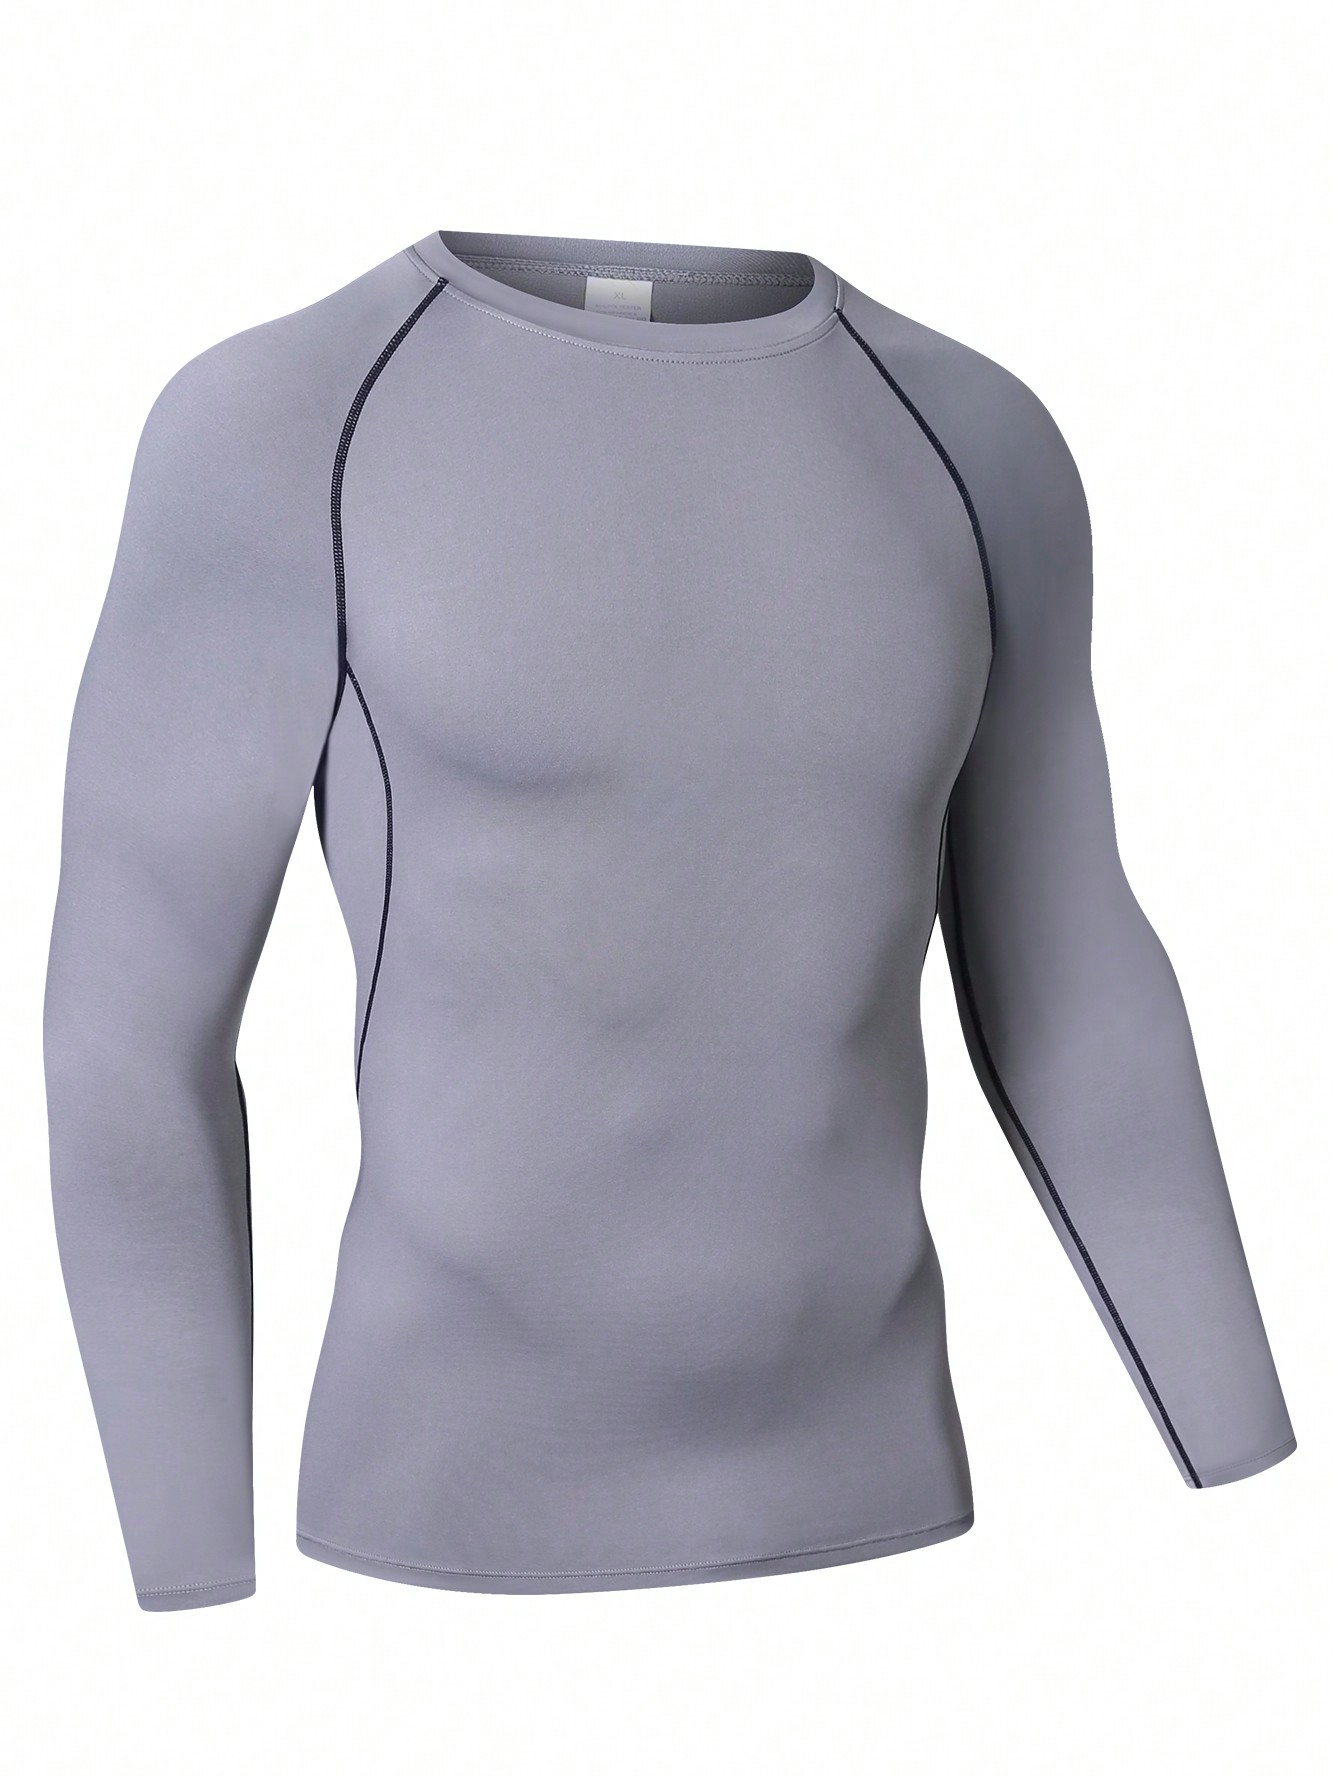 Мужская эластичная компрессионная рубашка для фитнеса с длинными рукавами, серый фото